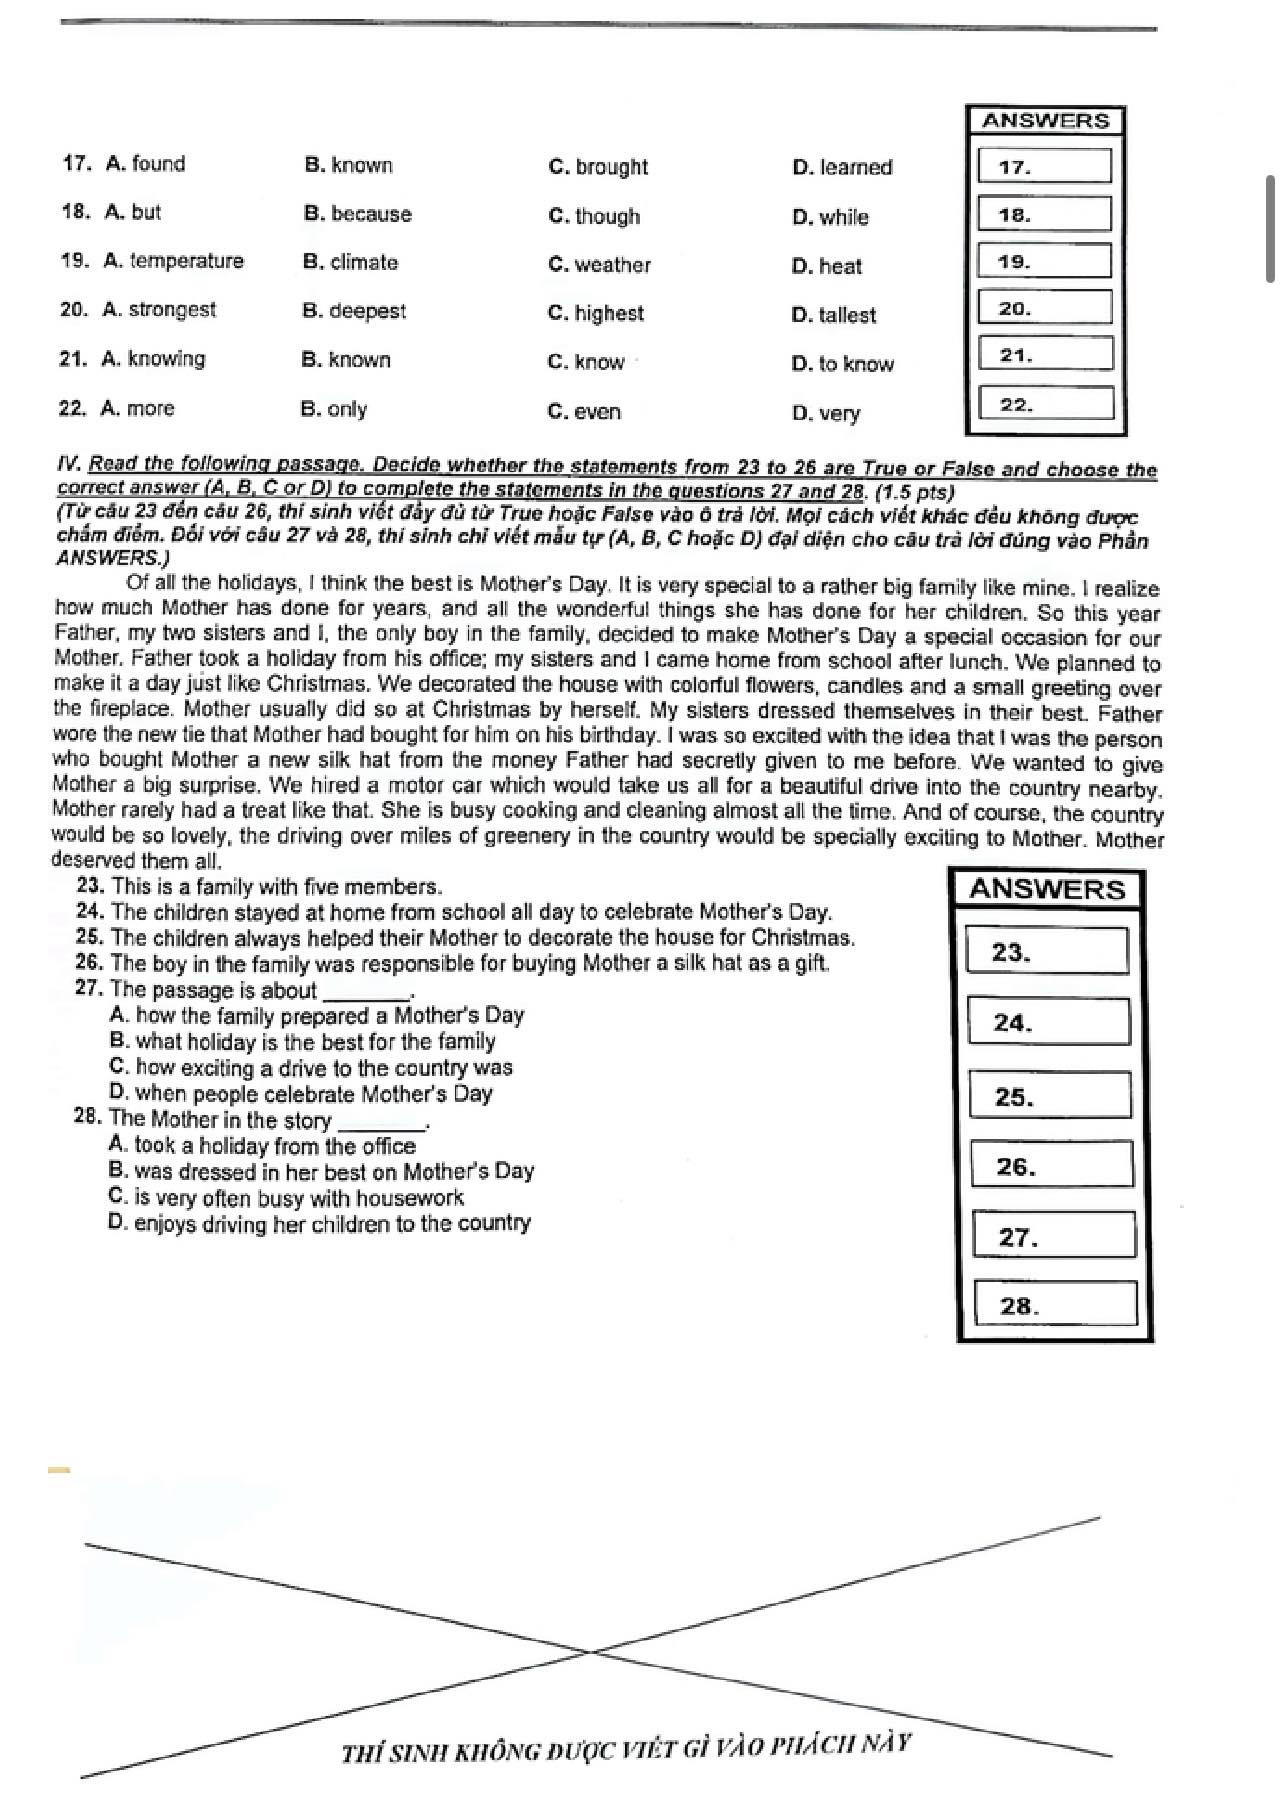 Tuyển sinh - Du học - Cập nhật đề thi, đáp án gợi ý môn Tiếng Anh vào lớp 10 tại TP.HCM chuẩn nhất, chi tiết nhất (Hình 3).